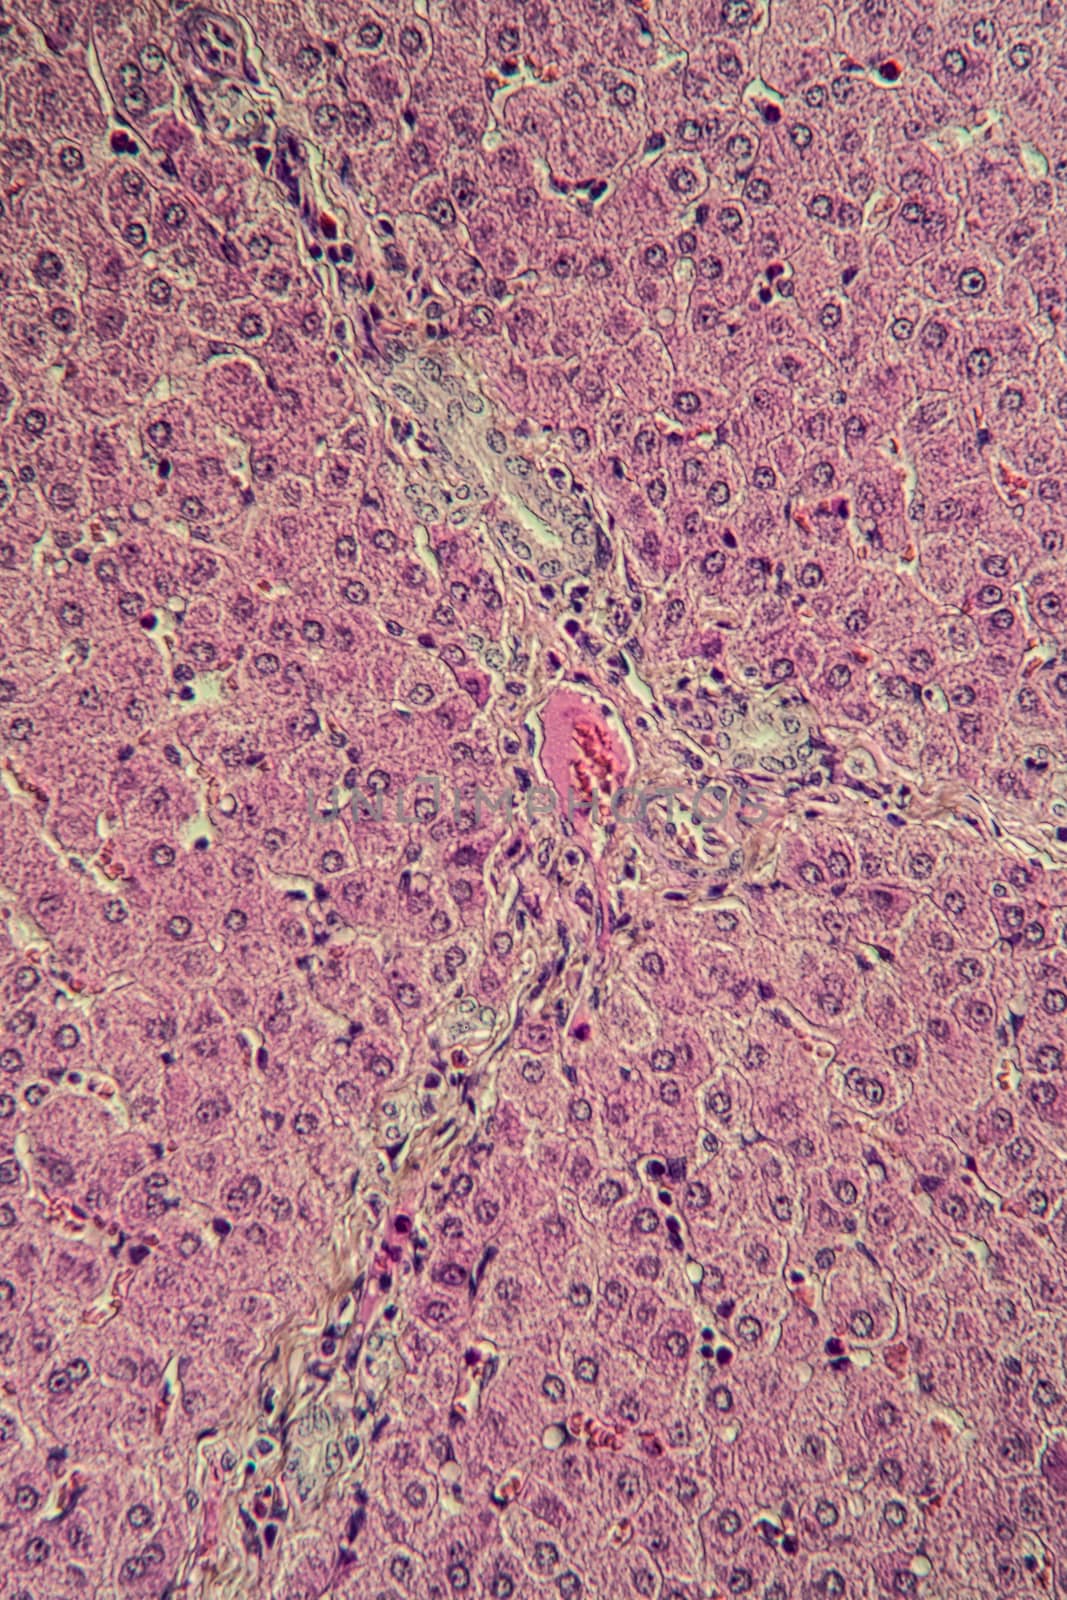 Pork liver tissue cut 100x by Dr-Lange